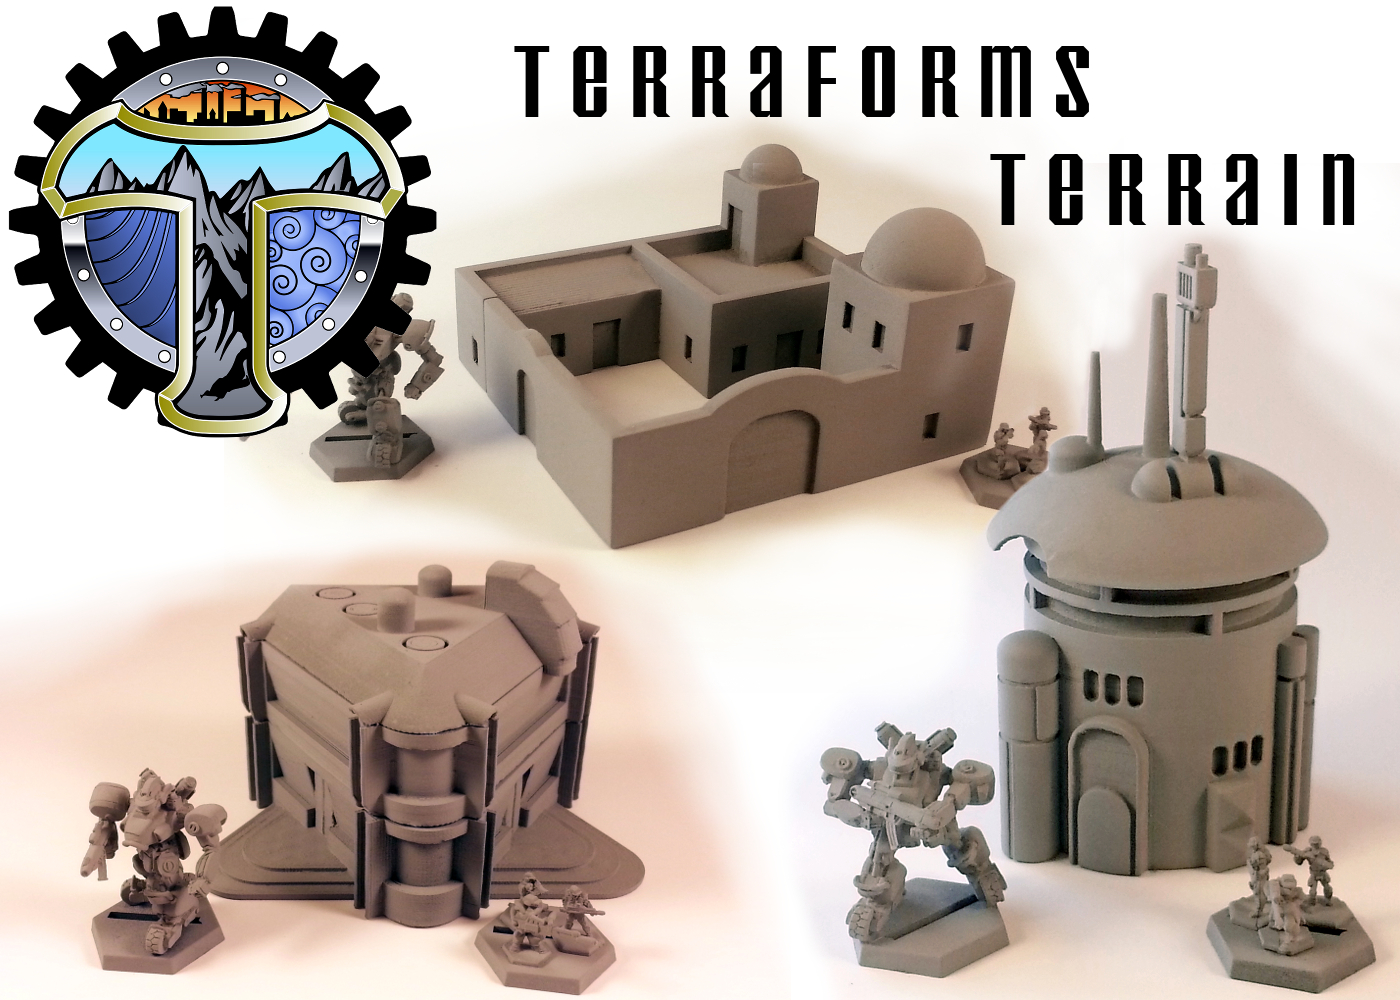 TerraForms Terrain Kickstarter Update